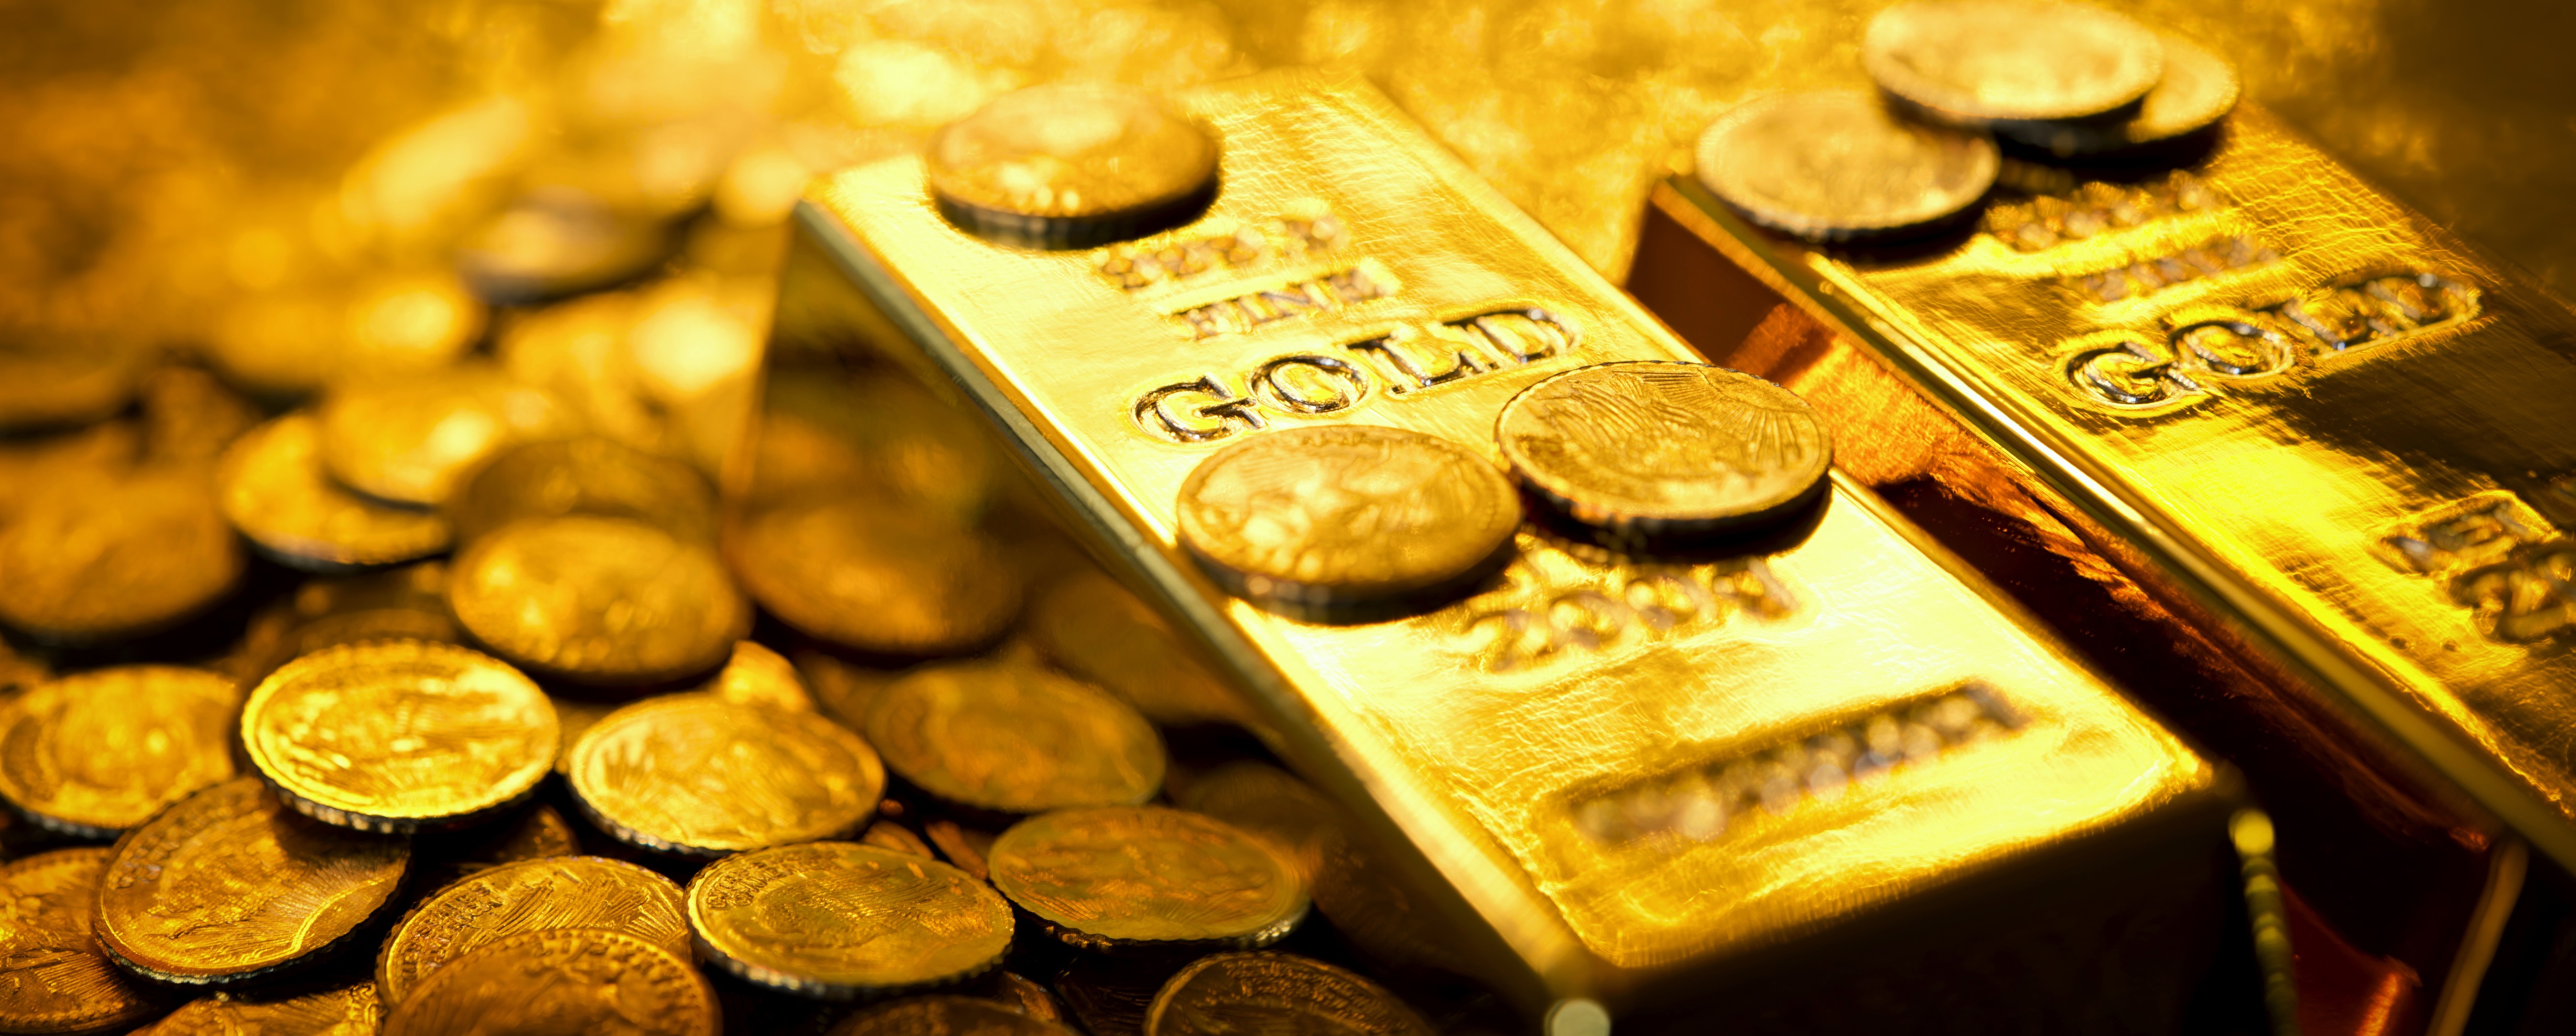 أسعار الذهب تنخفض